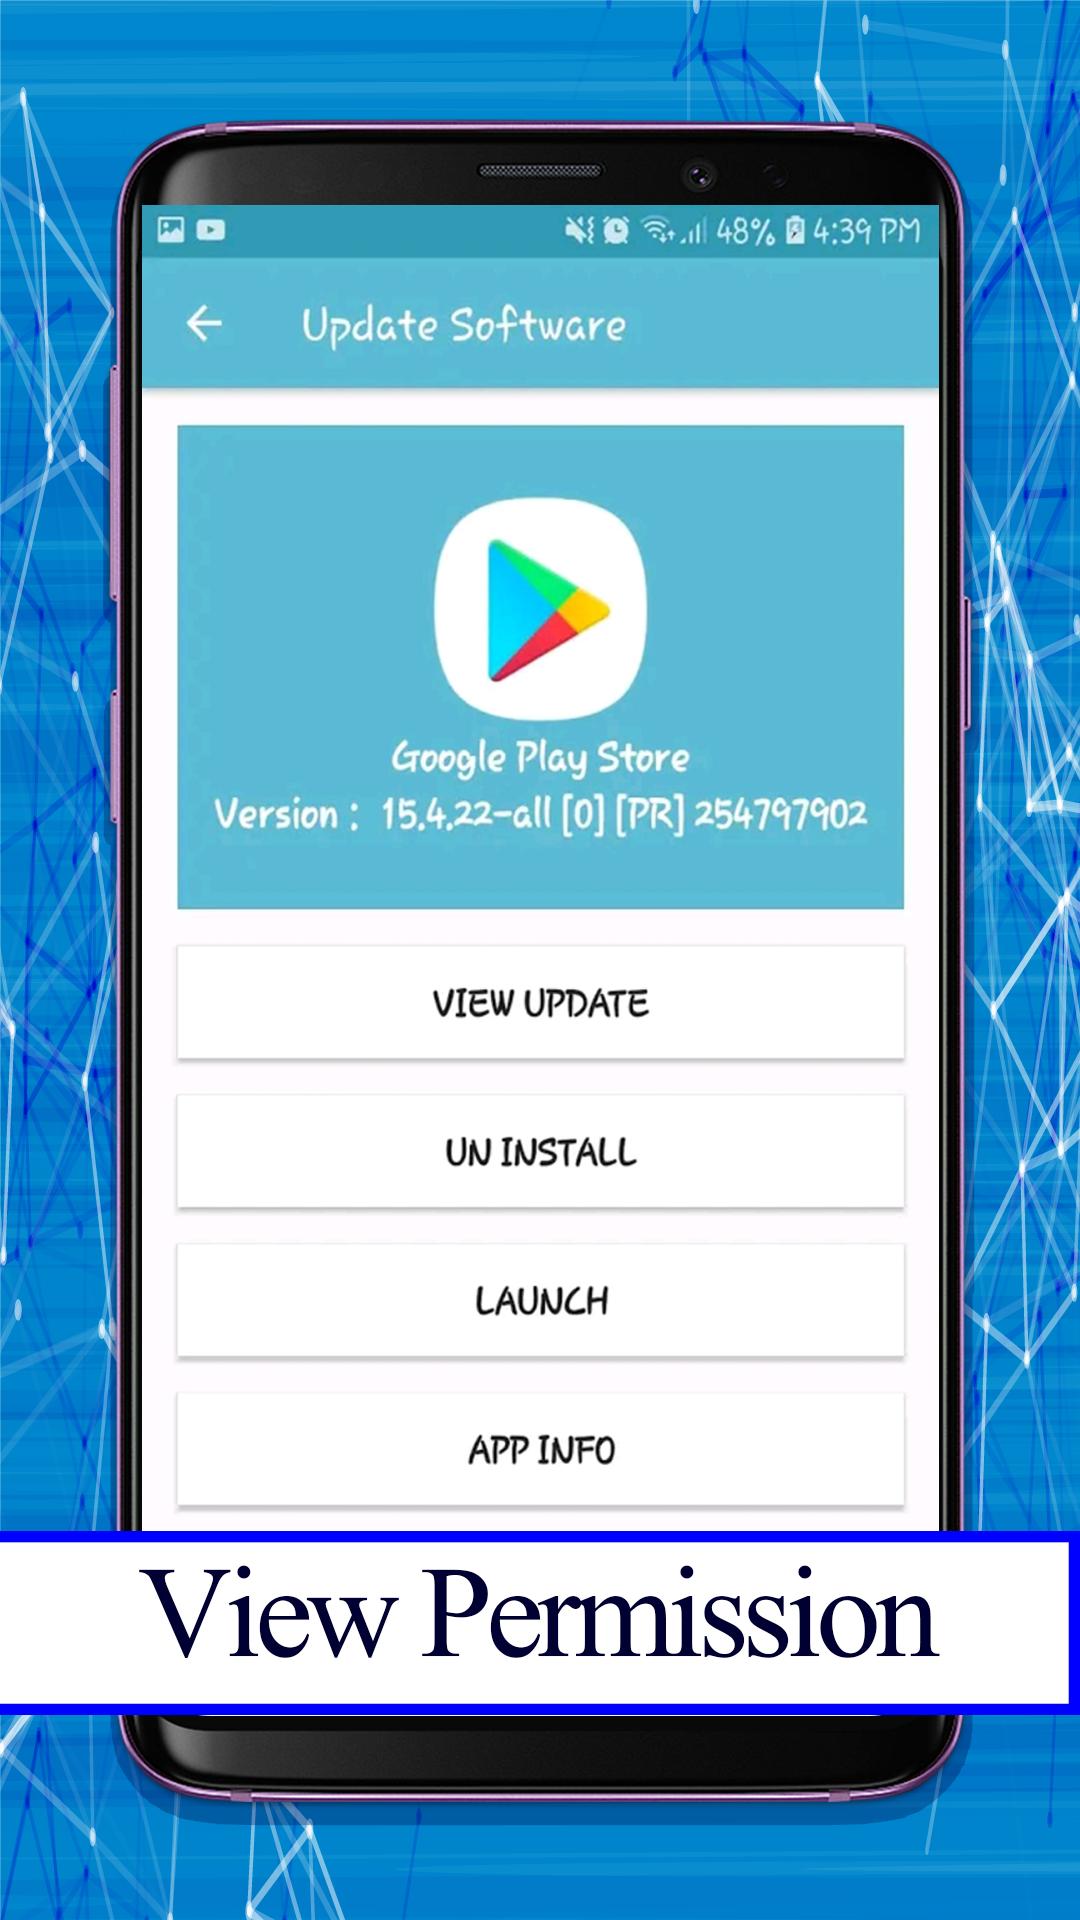 Update software - Update software of Play Store 1.0.2 Screenshot 3